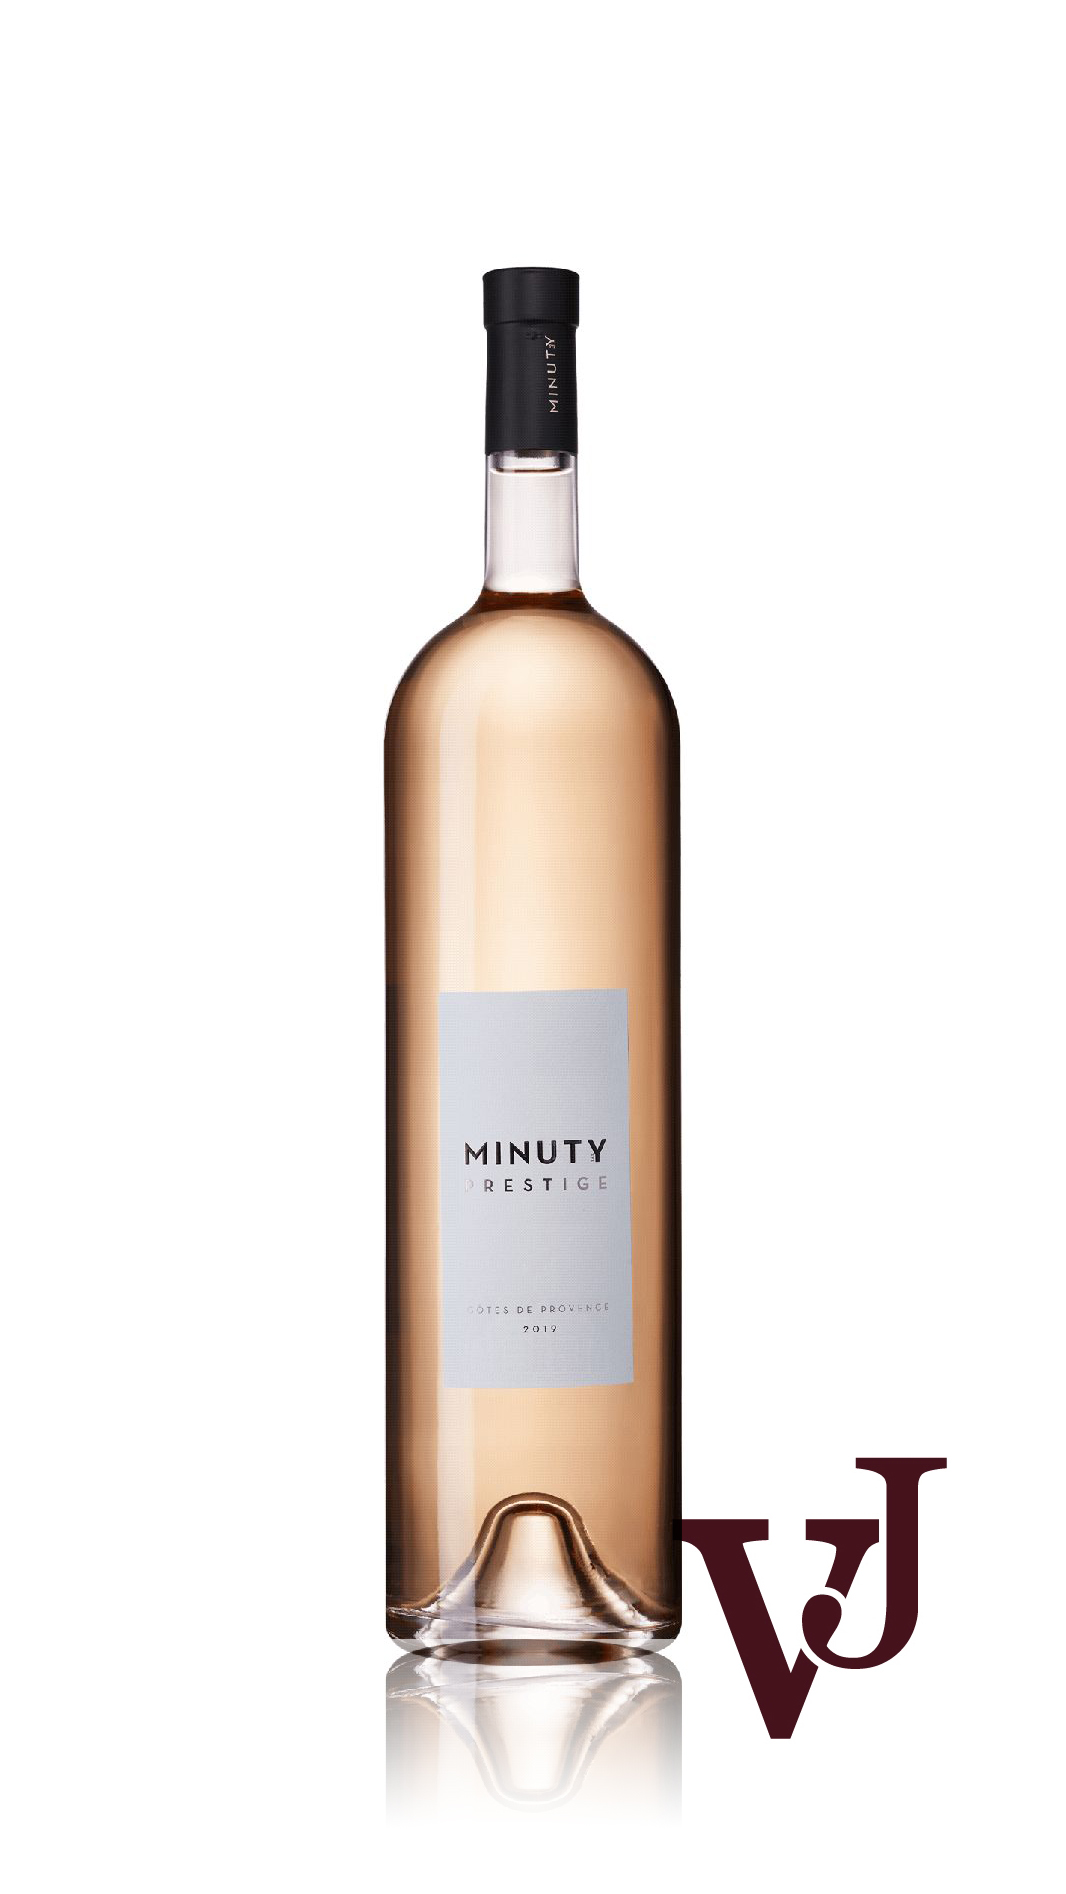 Rosé Vin - Minuty Prestige Rosé artikel nummer 7396408 från producenten Château Minuty från området Frankrike